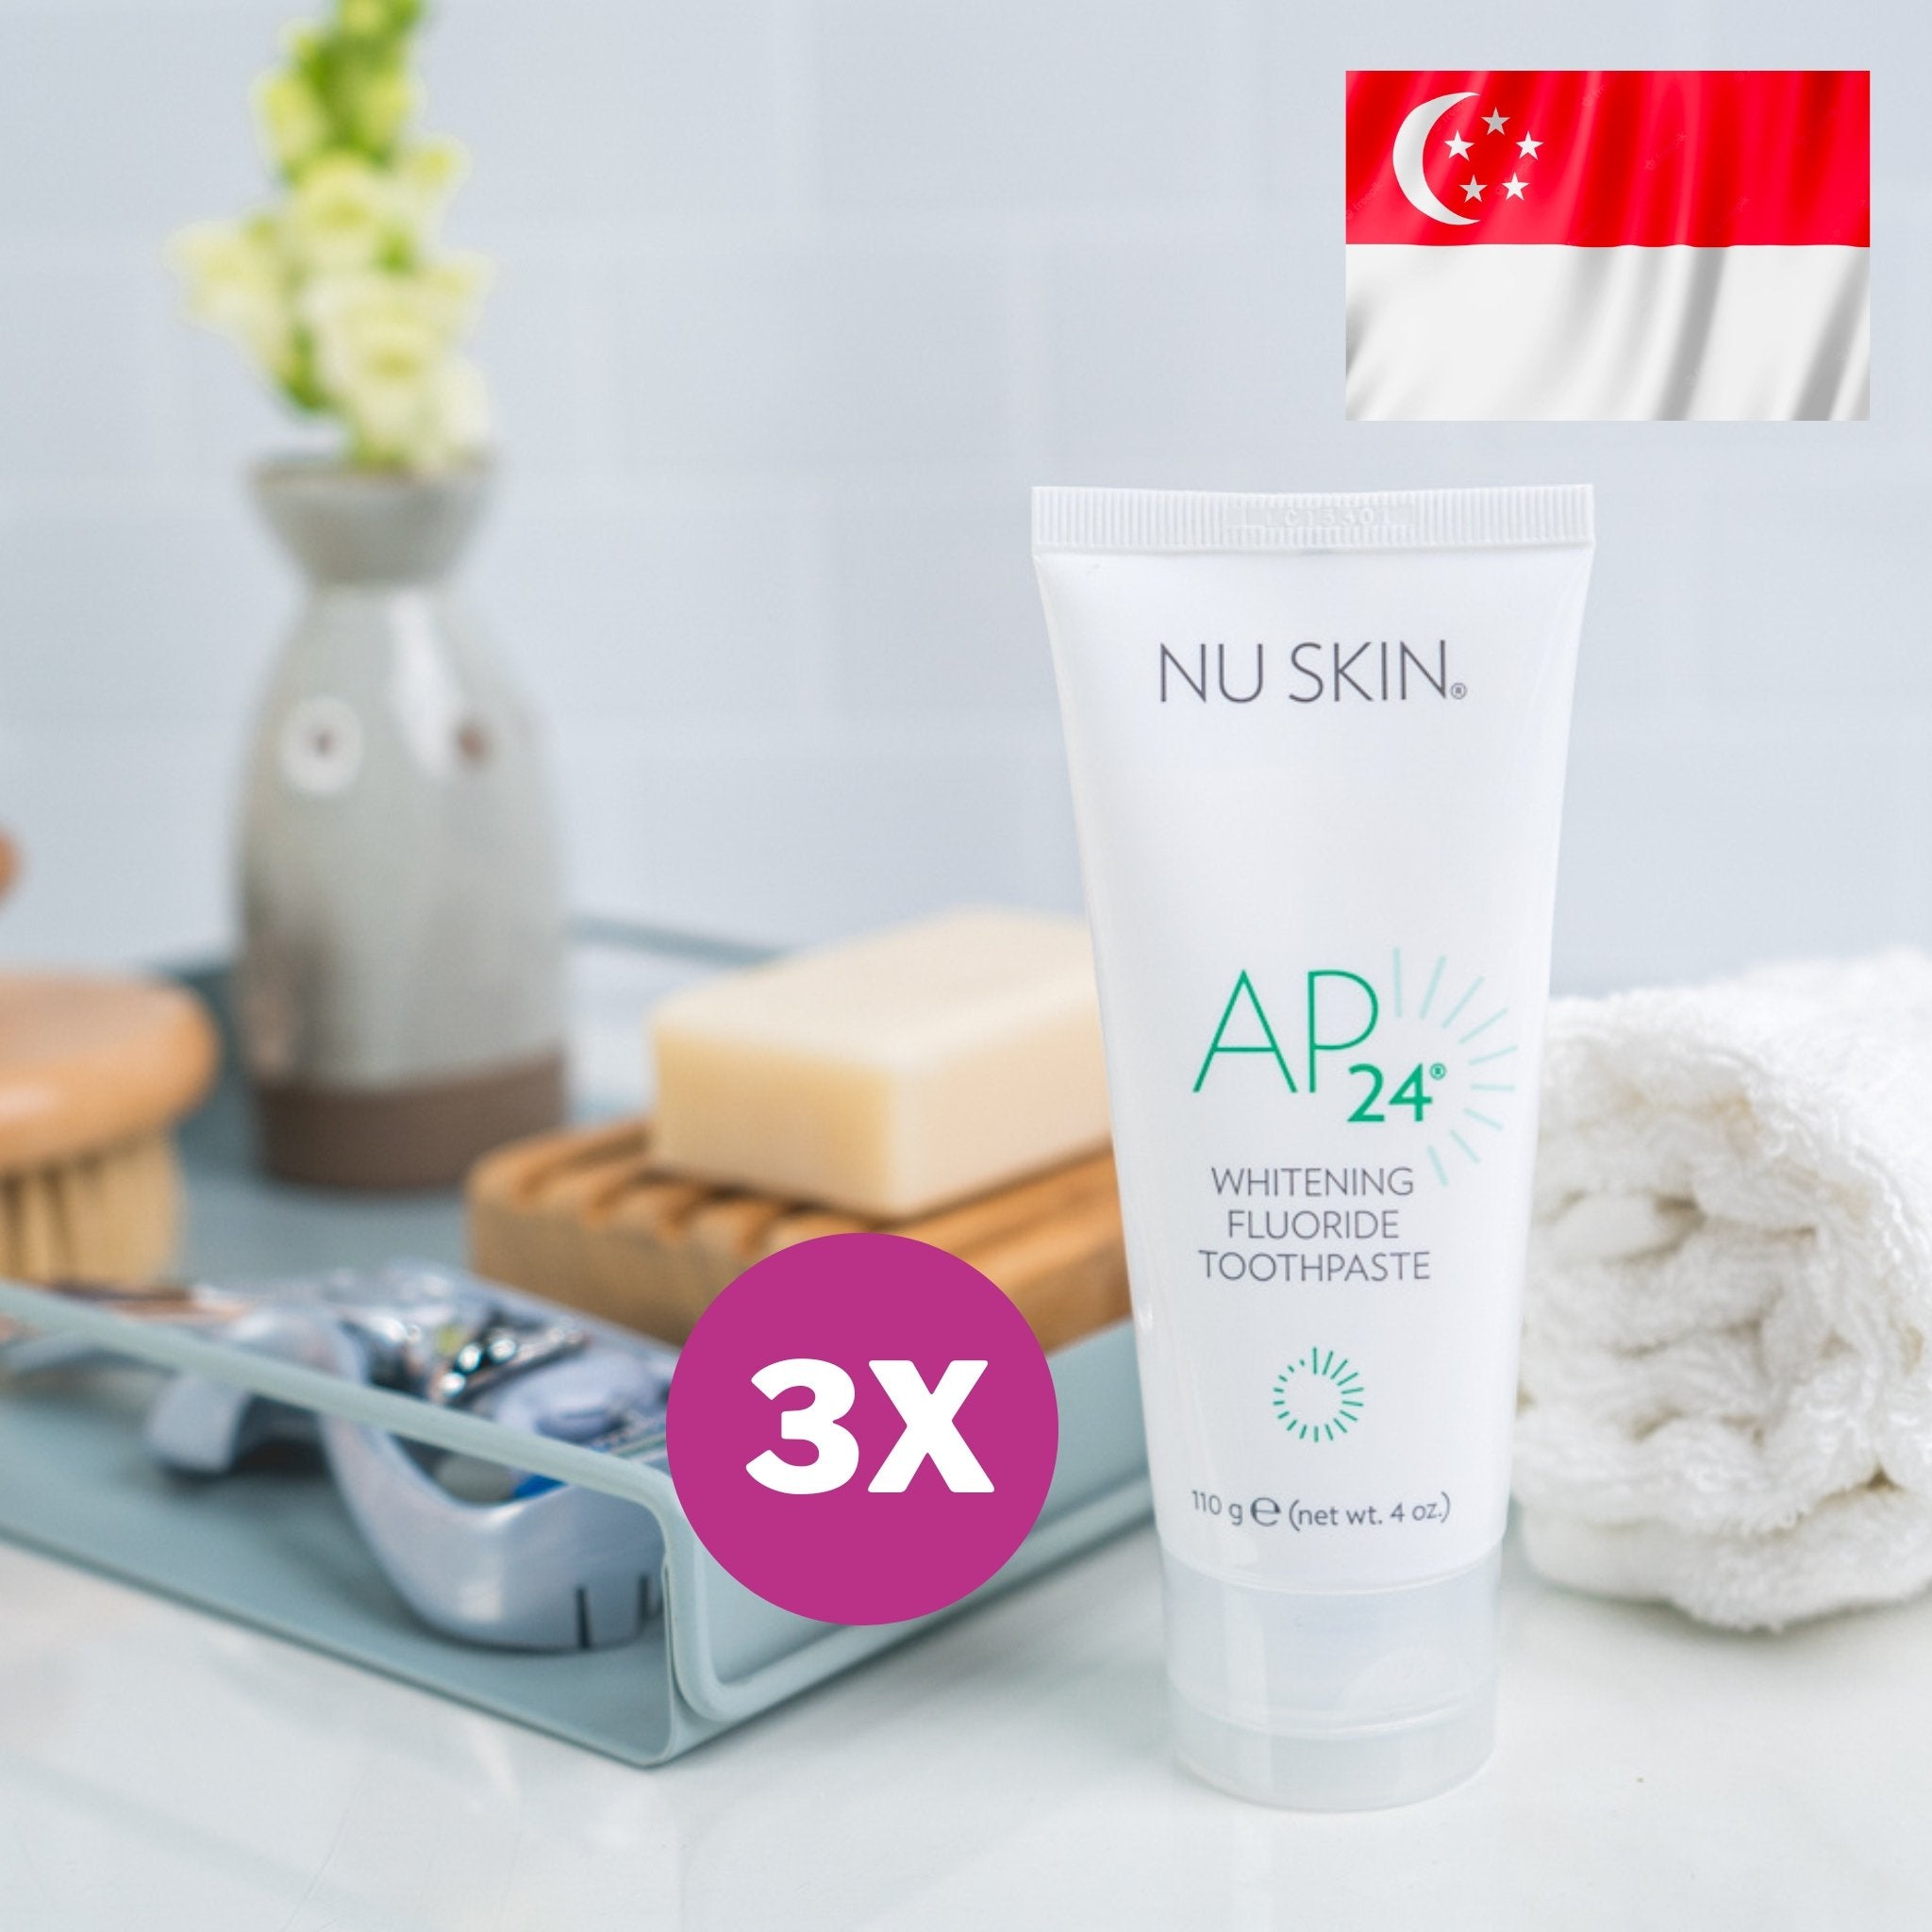 3x AP 24 Whitening Fluoride Toothpaste (Singapore-Shopee) - thatnatureworld